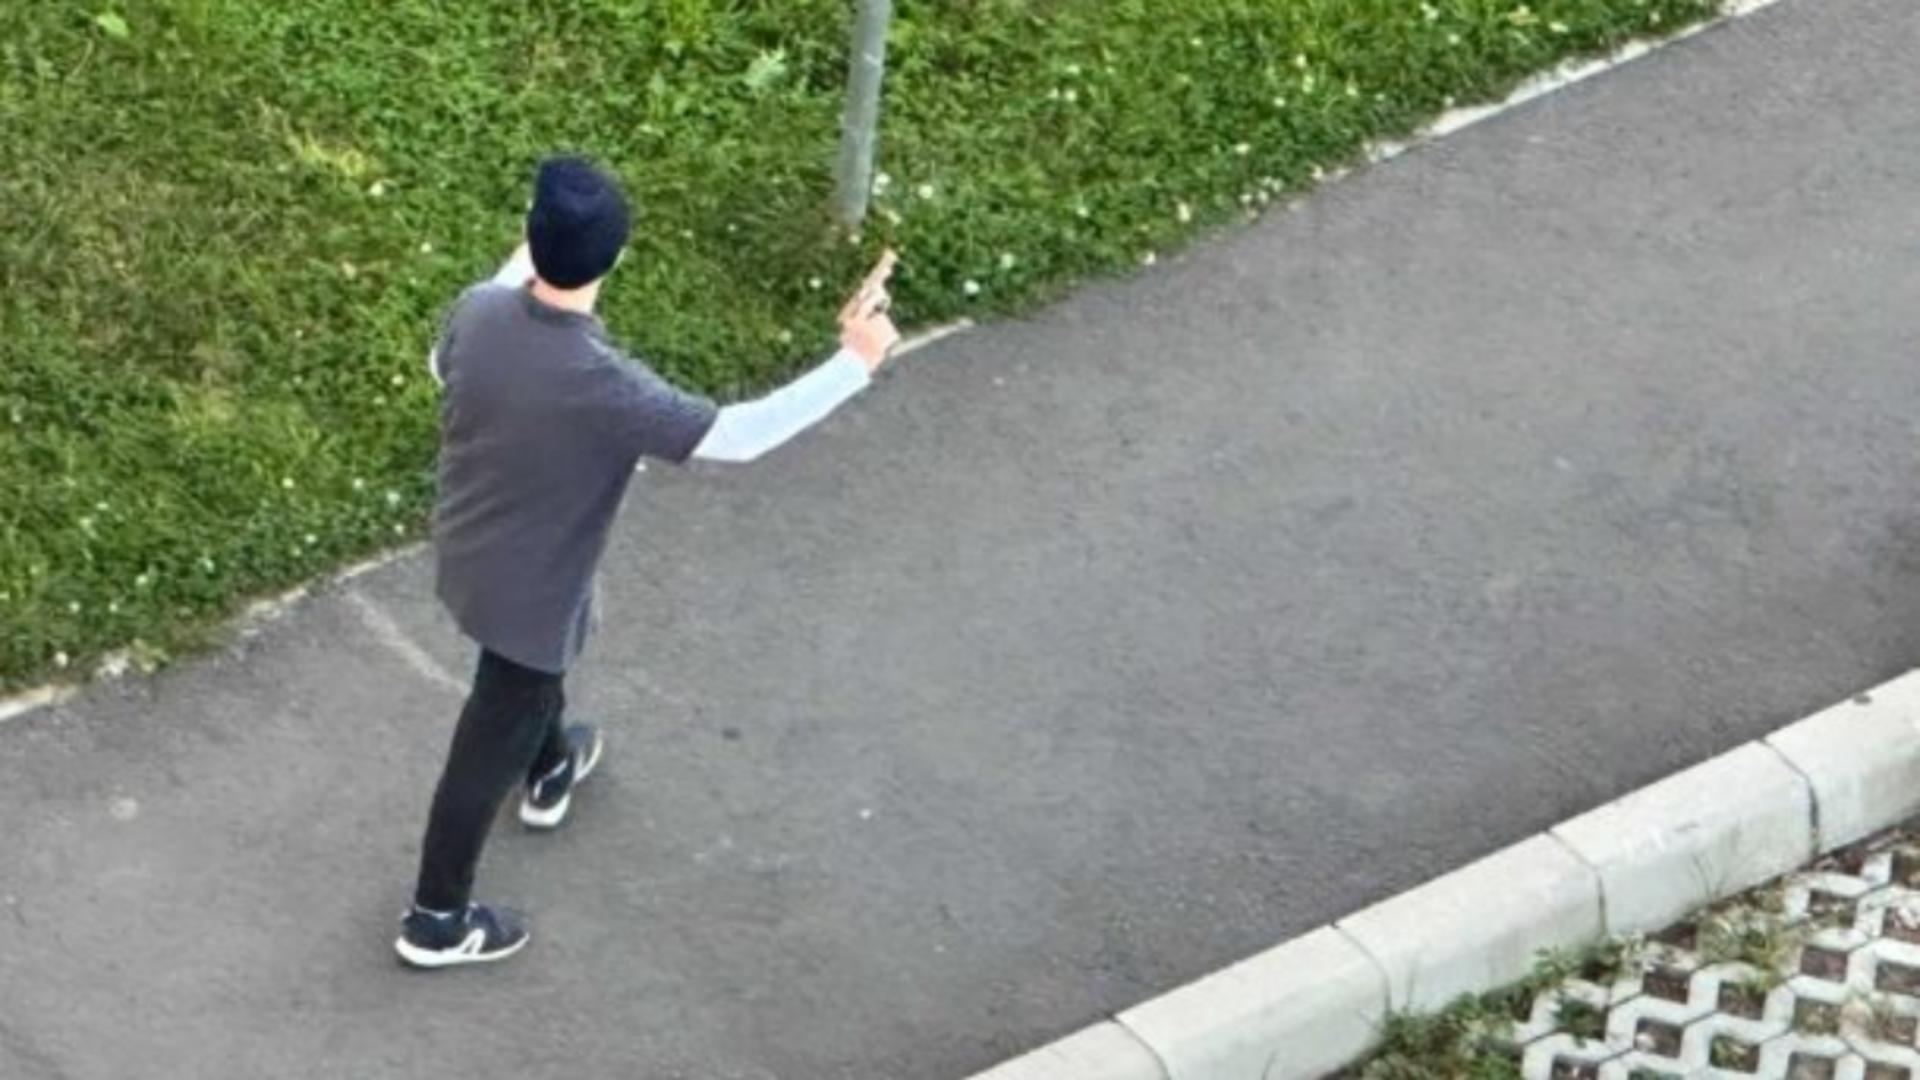 Alertă în Sibiu după ce un adolescent a ieșit cu pistolul pe stradă și a început să amenințe – Polițiștii l-au reținut imediat